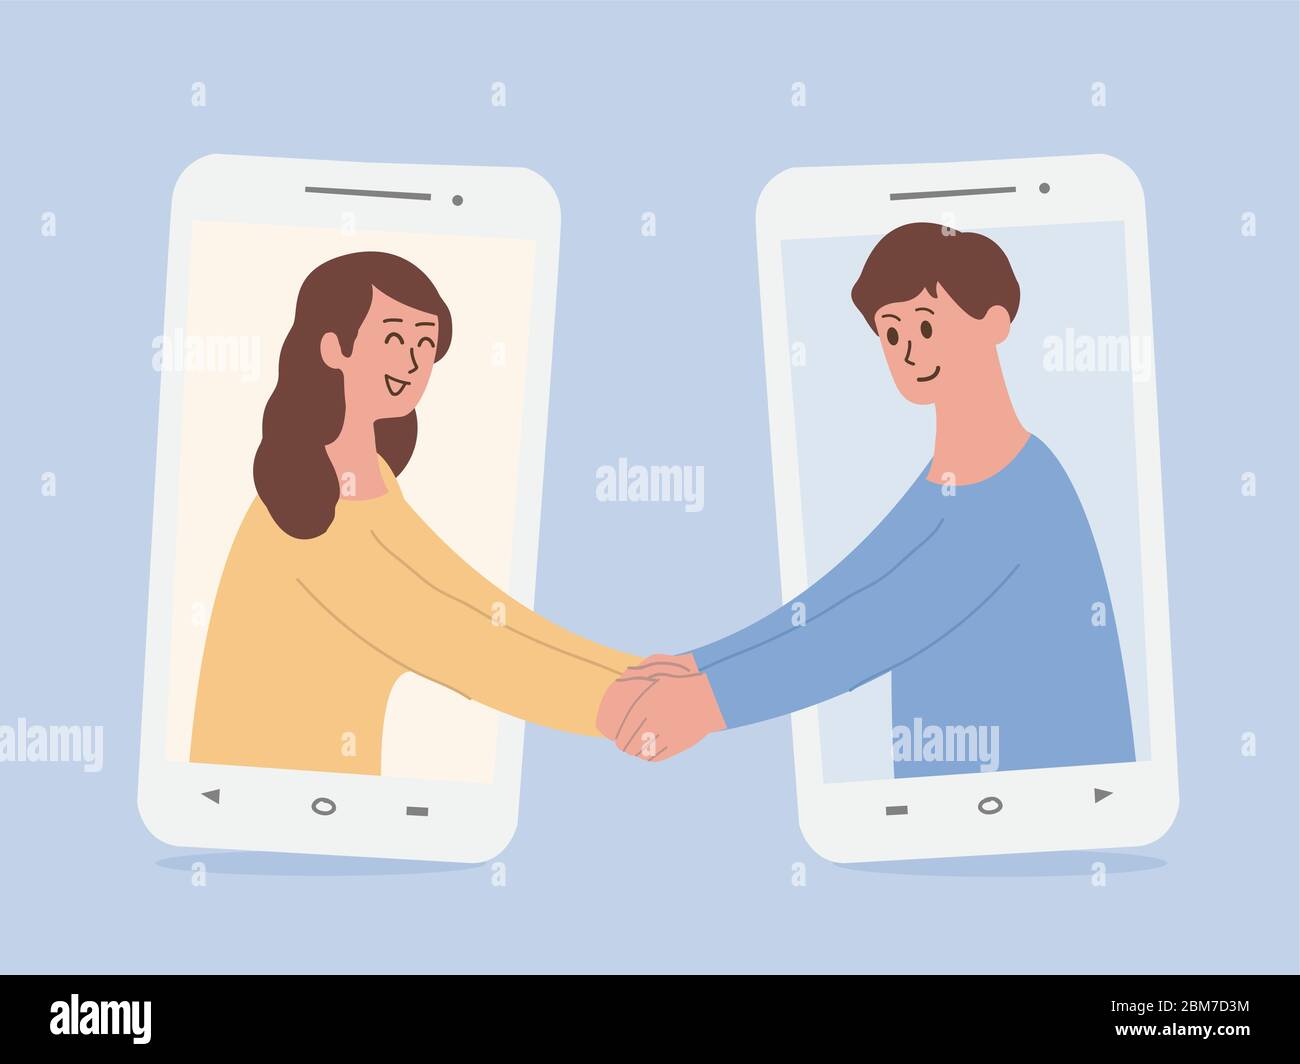 Glückliche Menschen aus dem Telefon und Begrüßung mit Handshake Videoanrufe über das Smartphone wechseln zur neuen Normalität gewöhnlicher Menschen. Stock Vektor